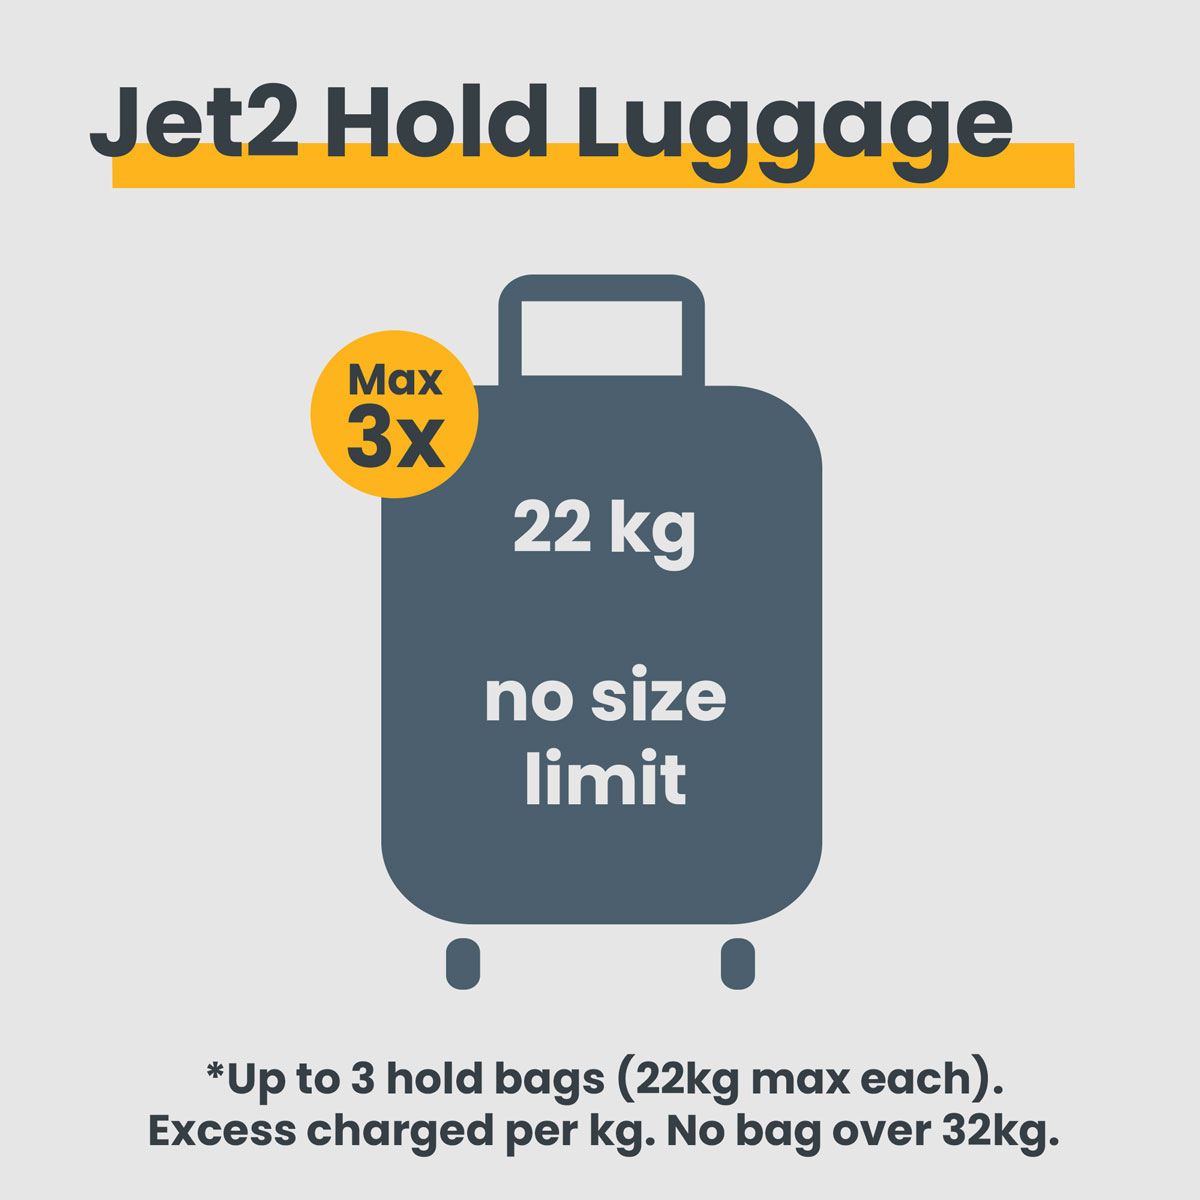 Jet2 Hold Luggage